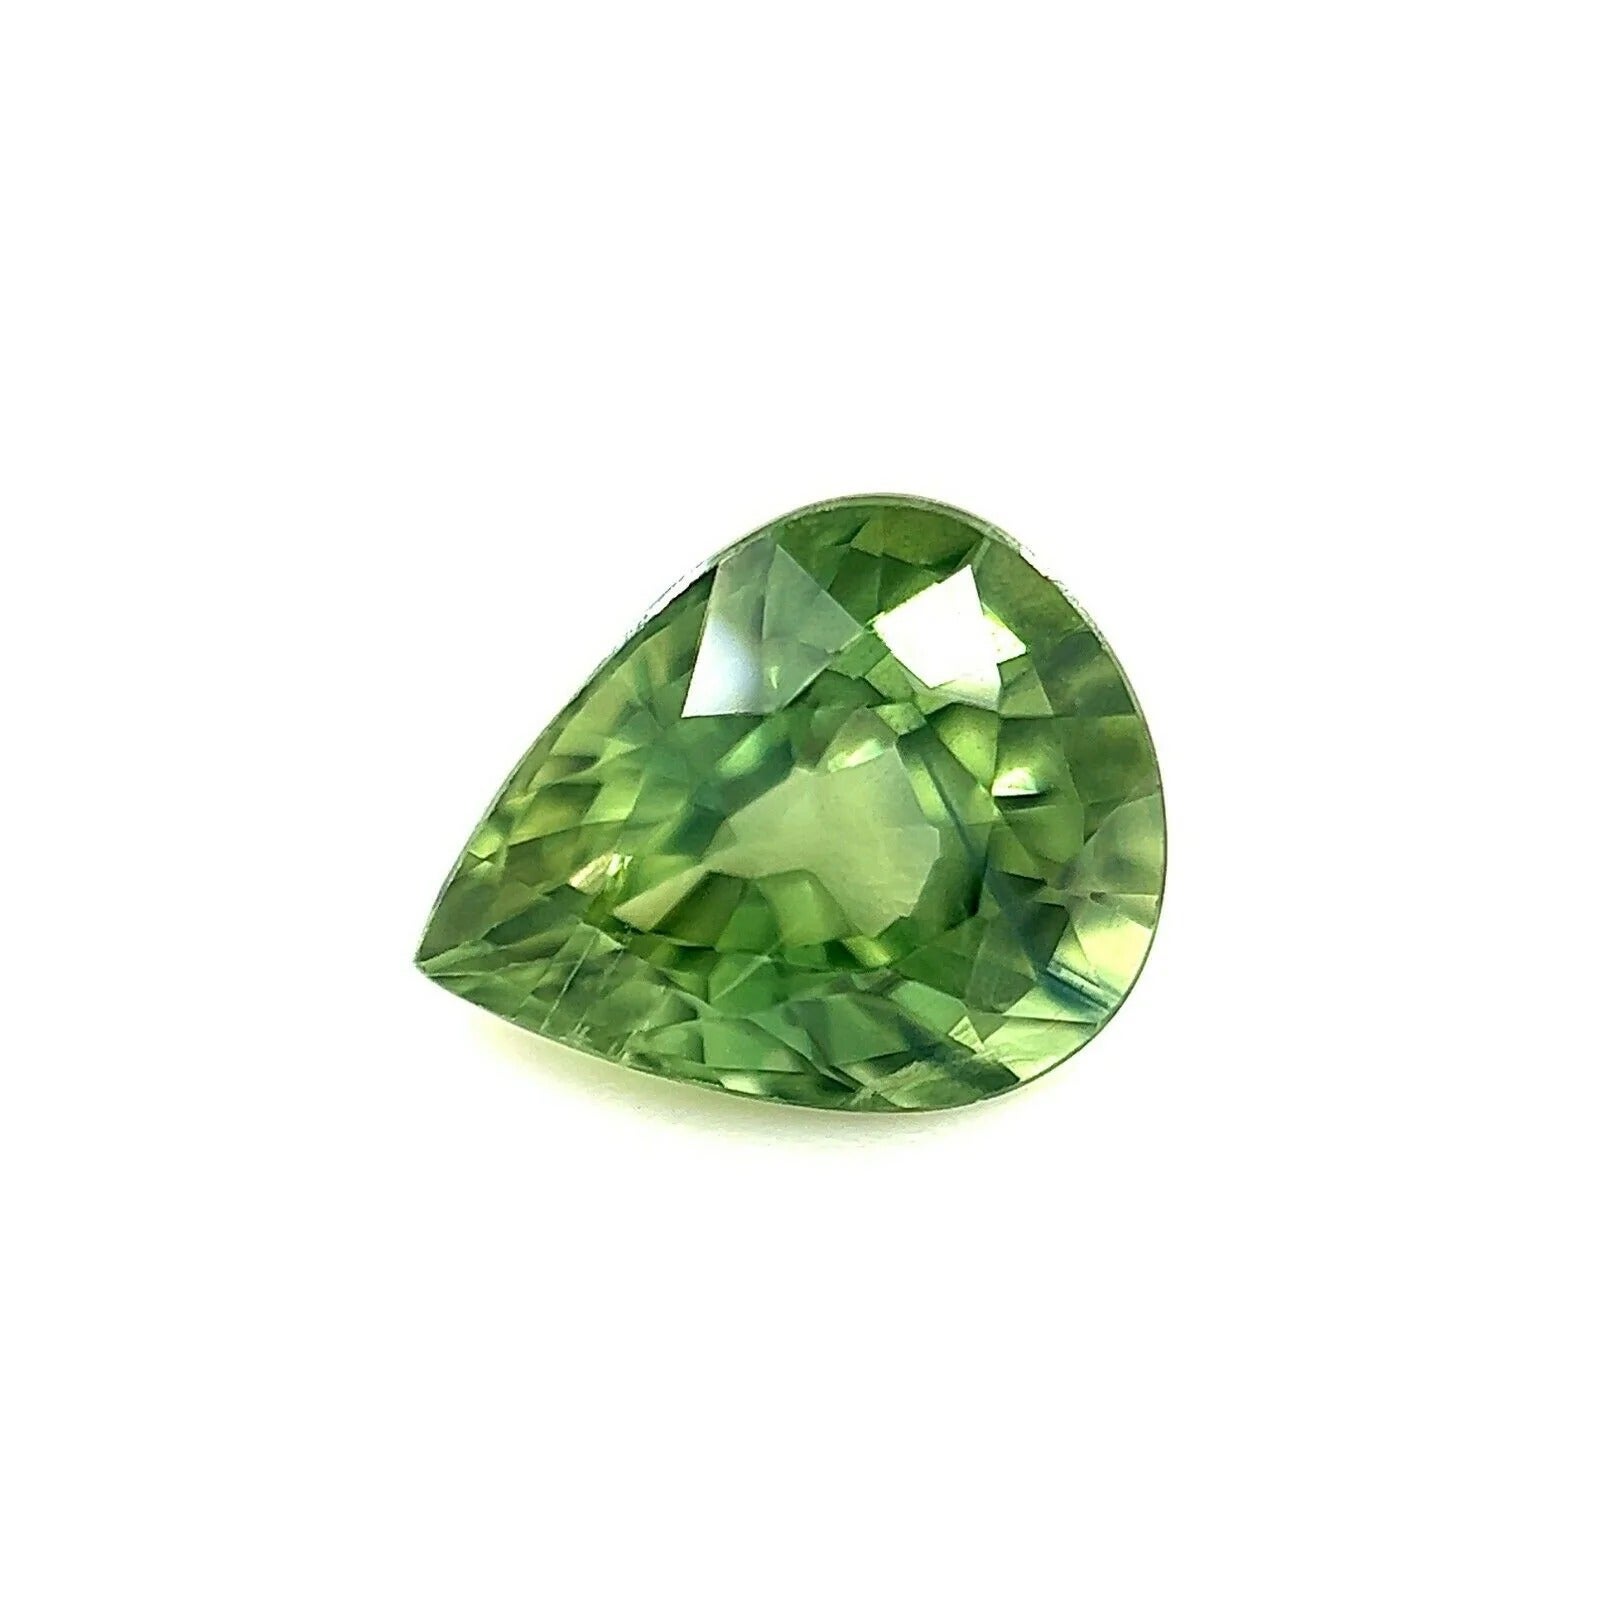 Fine 1.27ct Vivid Green Australian Sapphire Pear Teardrop Cut Gem For Sale